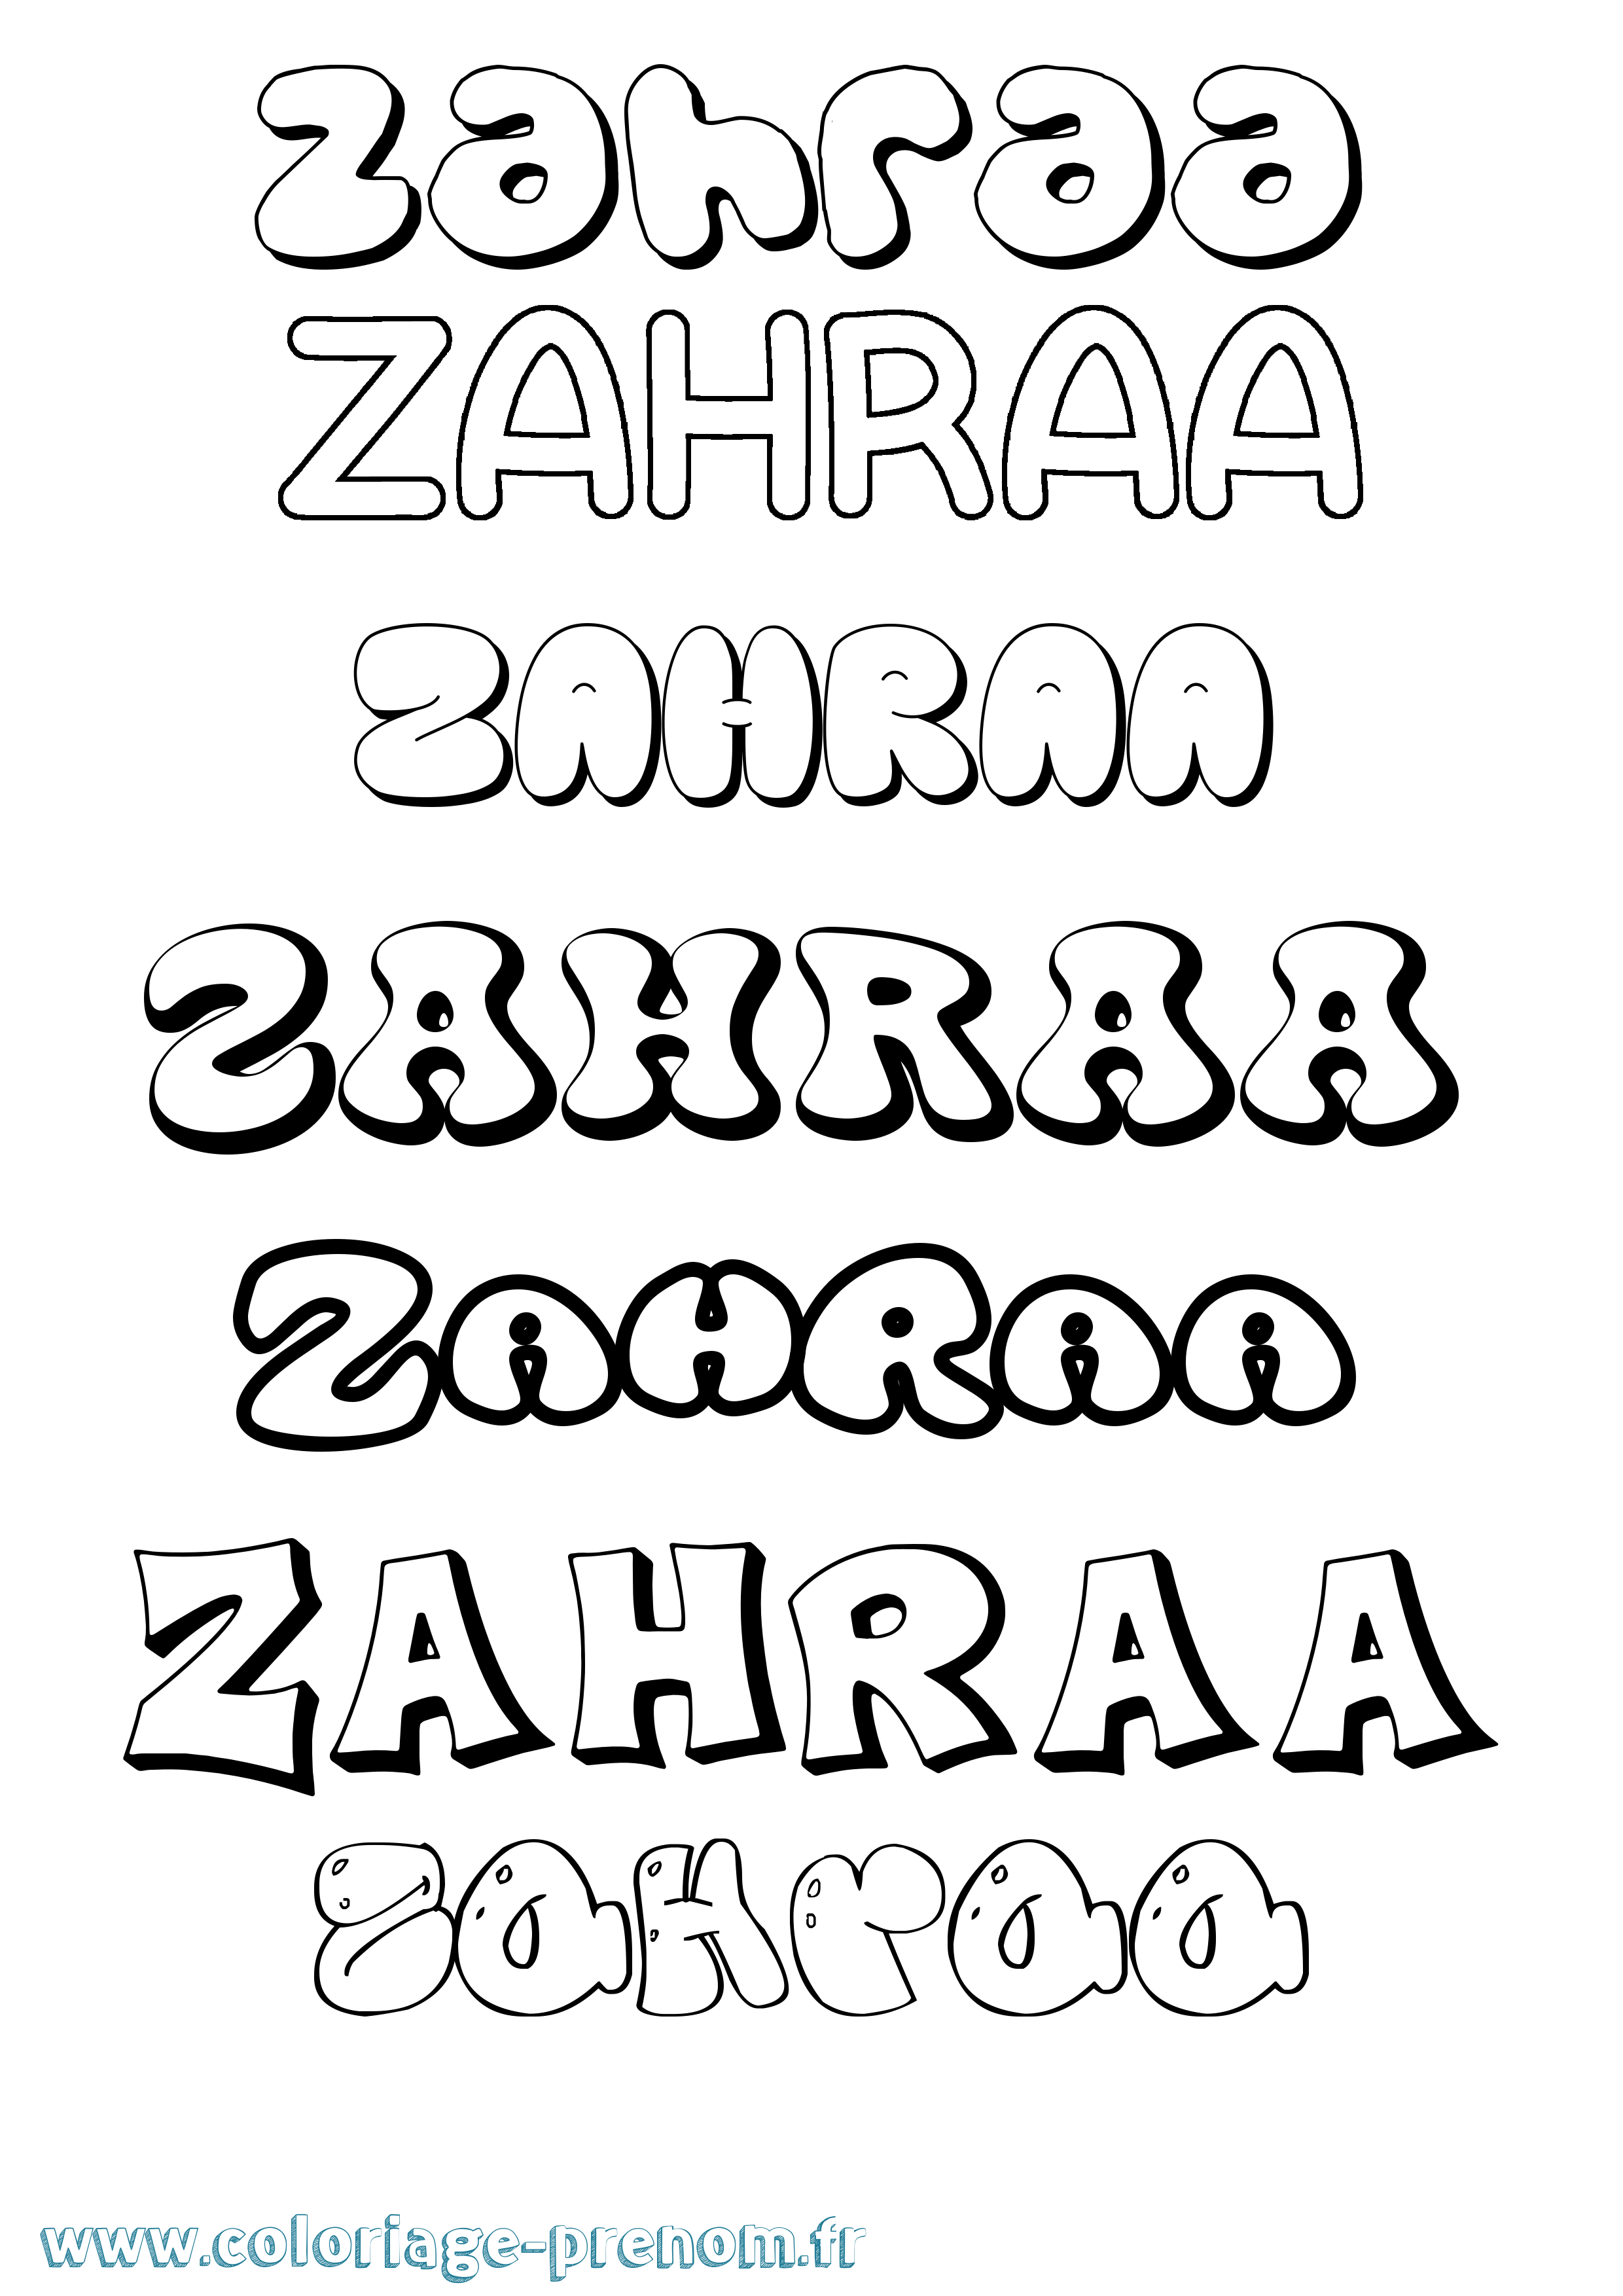 Coloriage prénom Zahraa Bubble